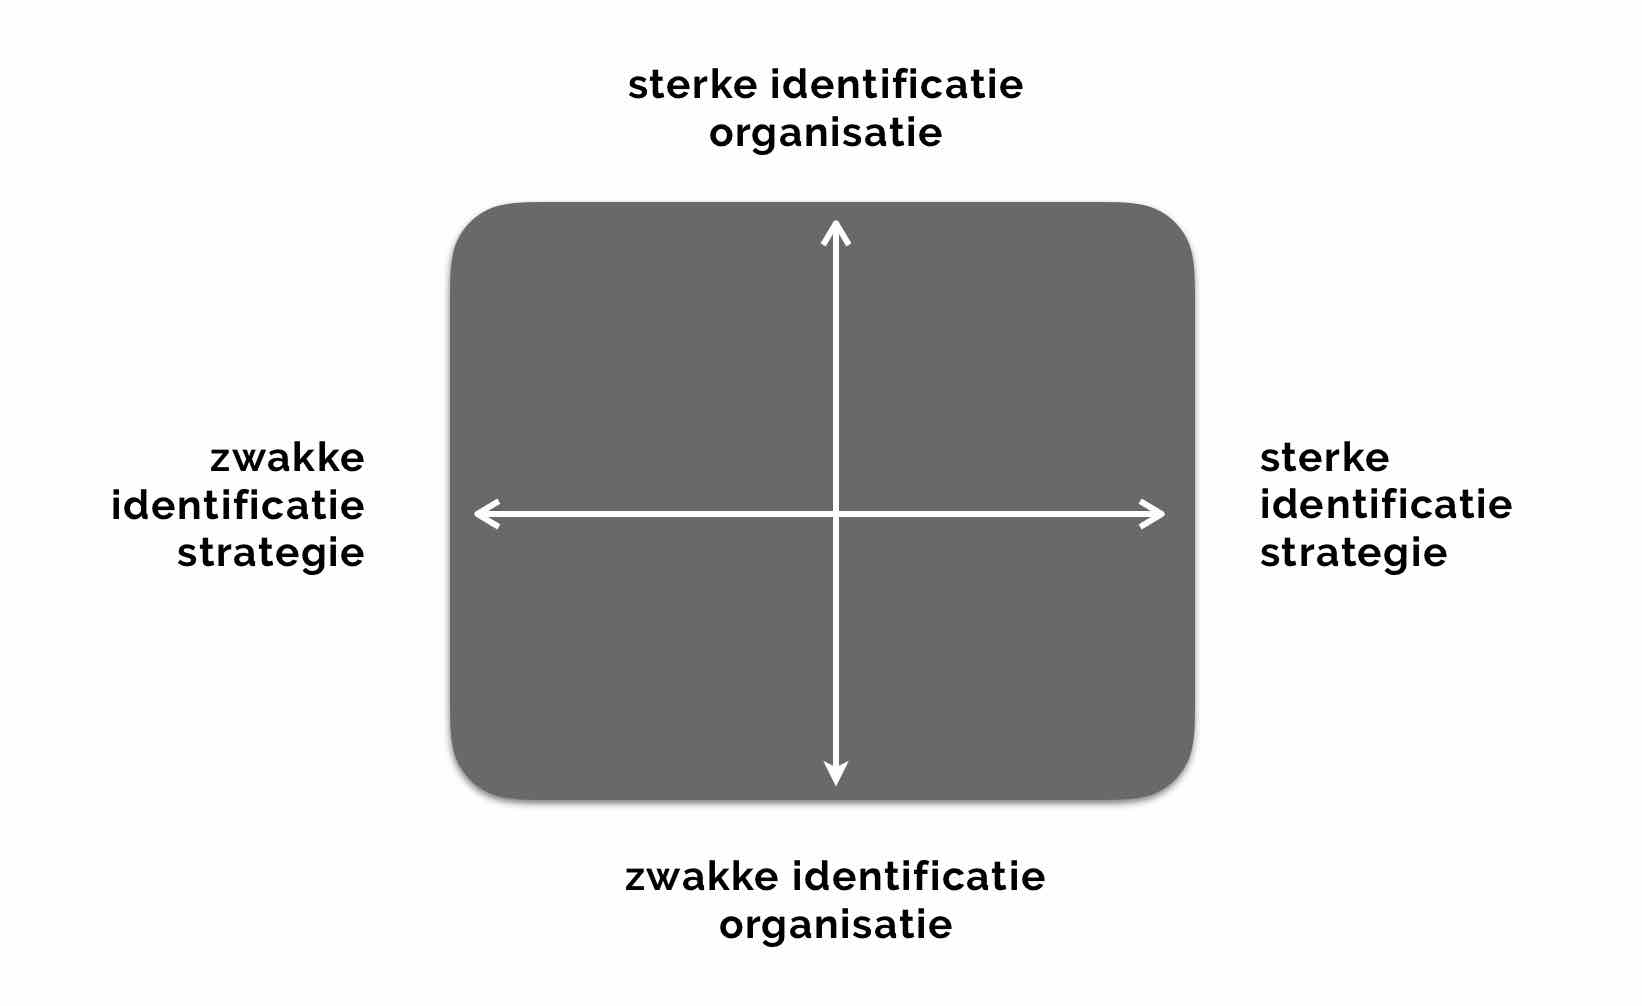 Identificatie met de strategie en organisatie zelf met identiteit